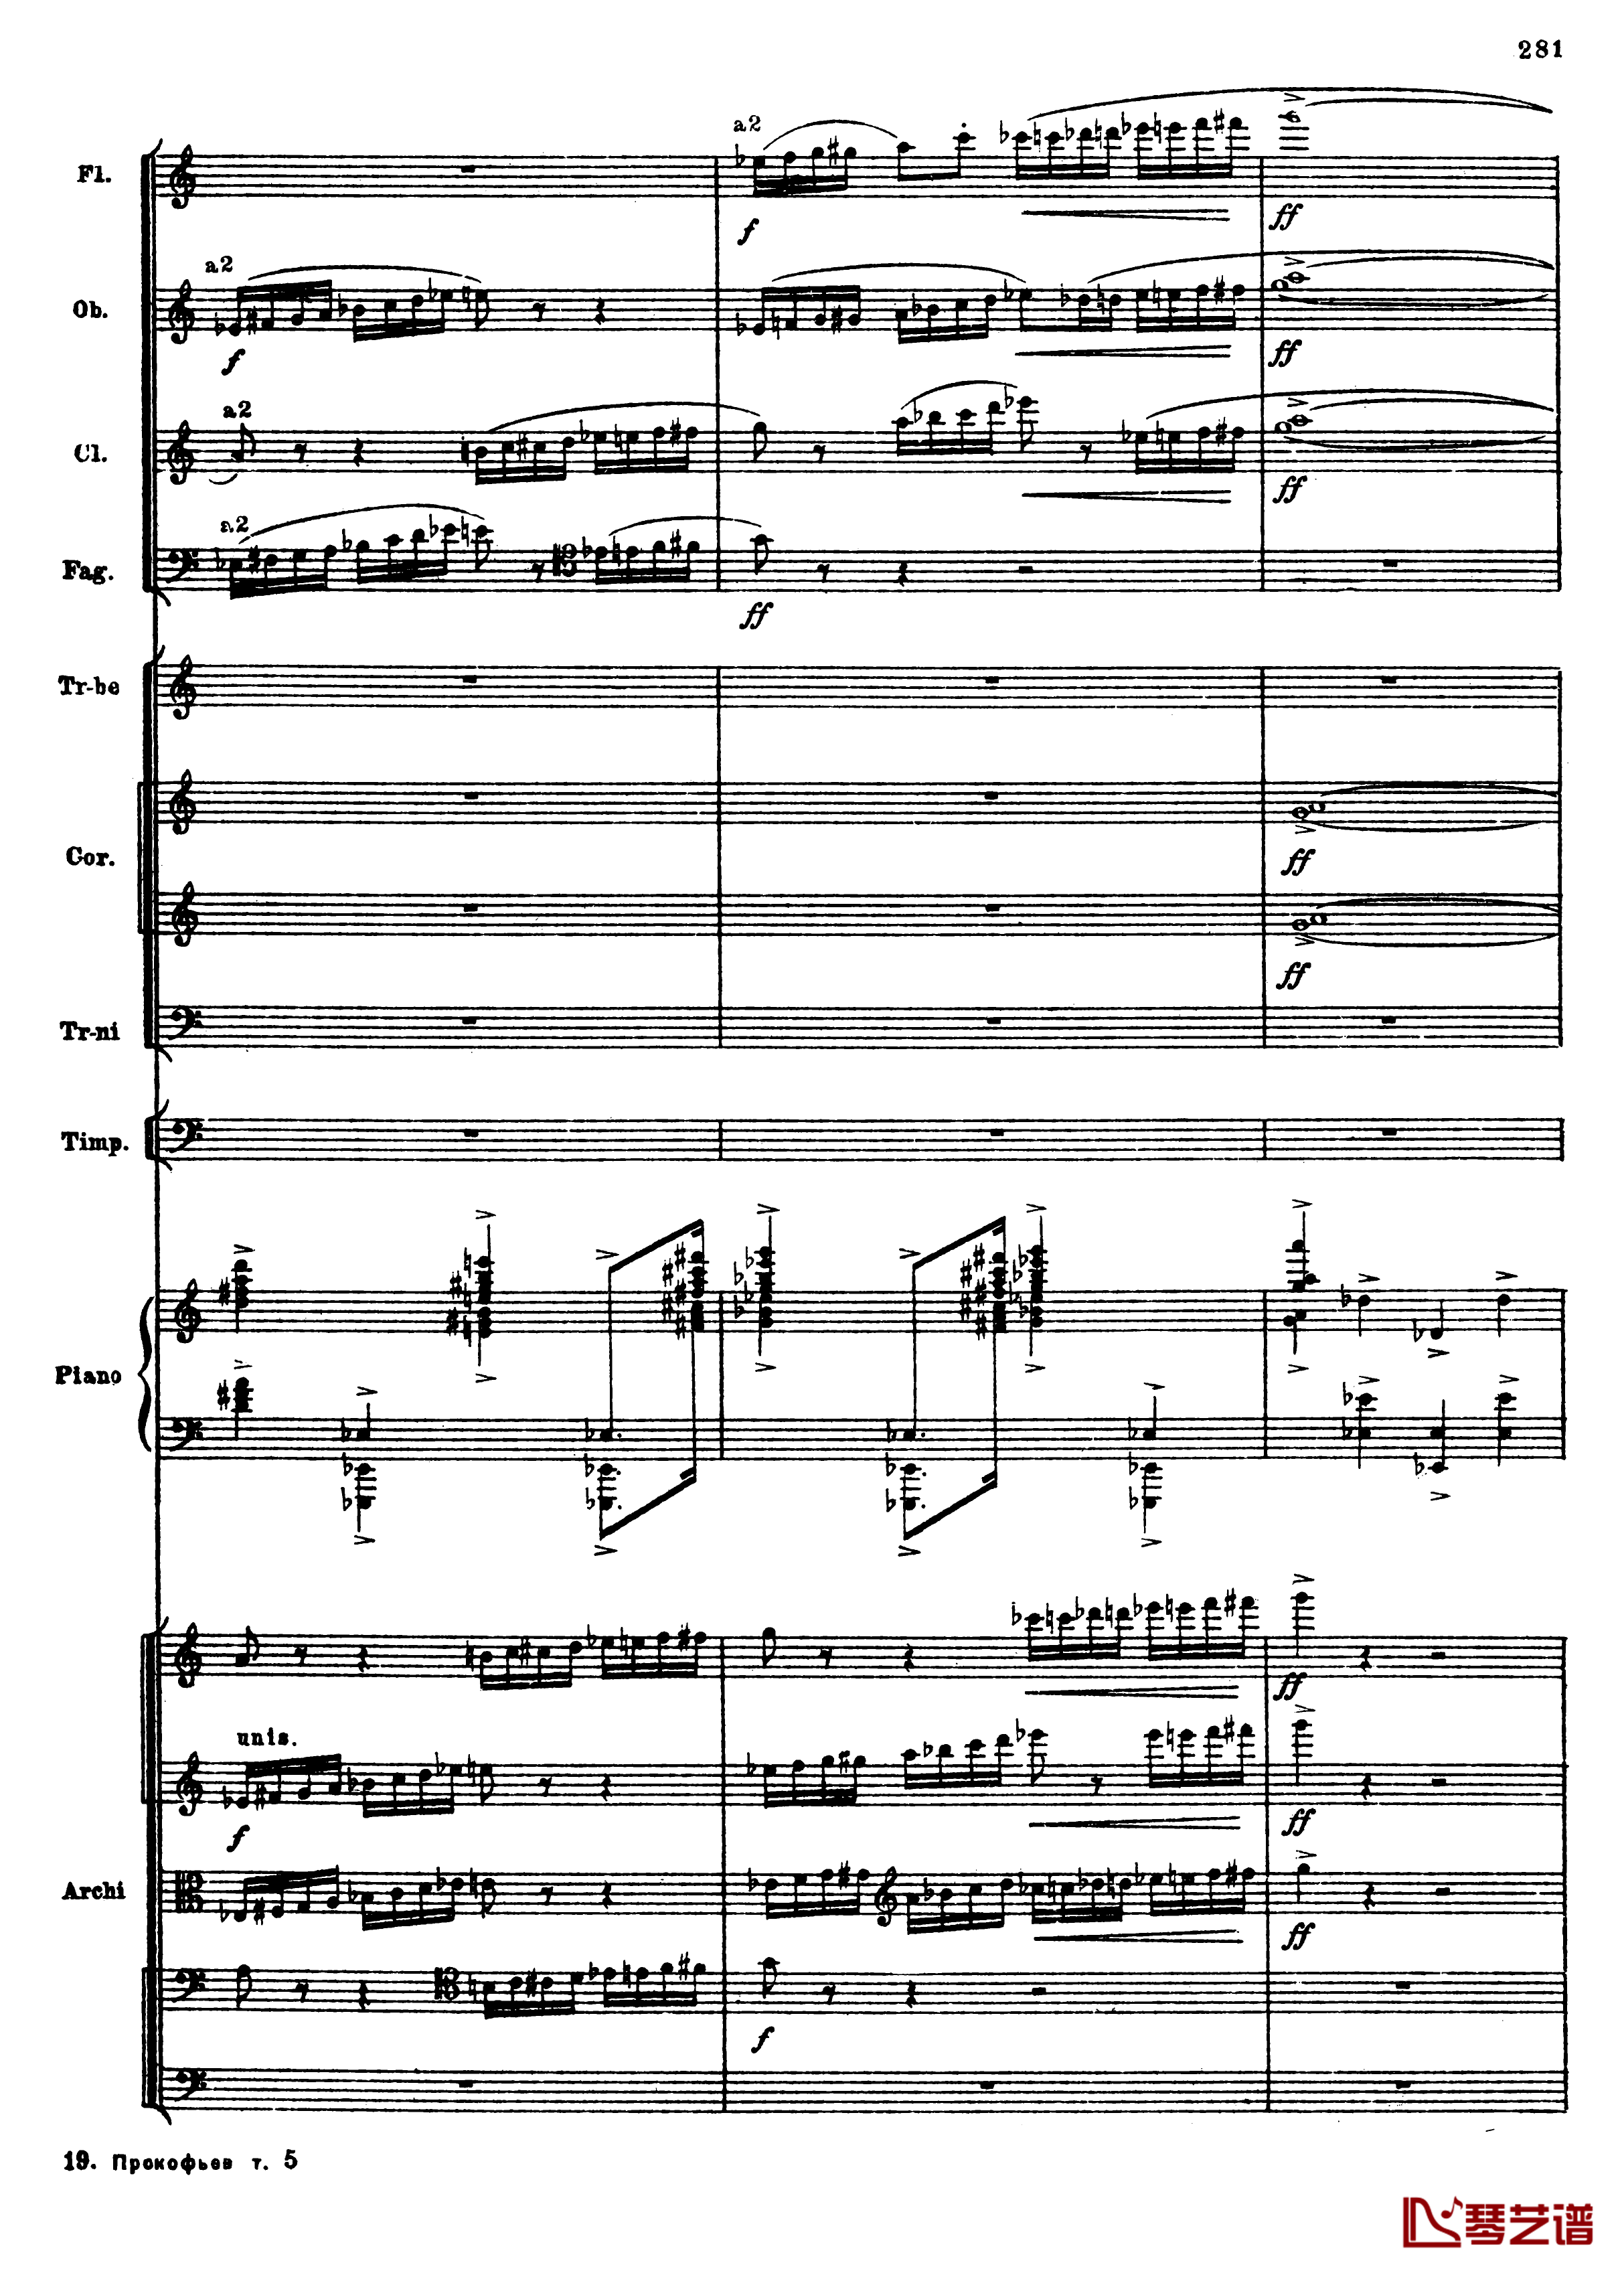 普罗科菲耶夫第三钢琴协奏曲钢琴谱-总谱-普罗科非耶夫13